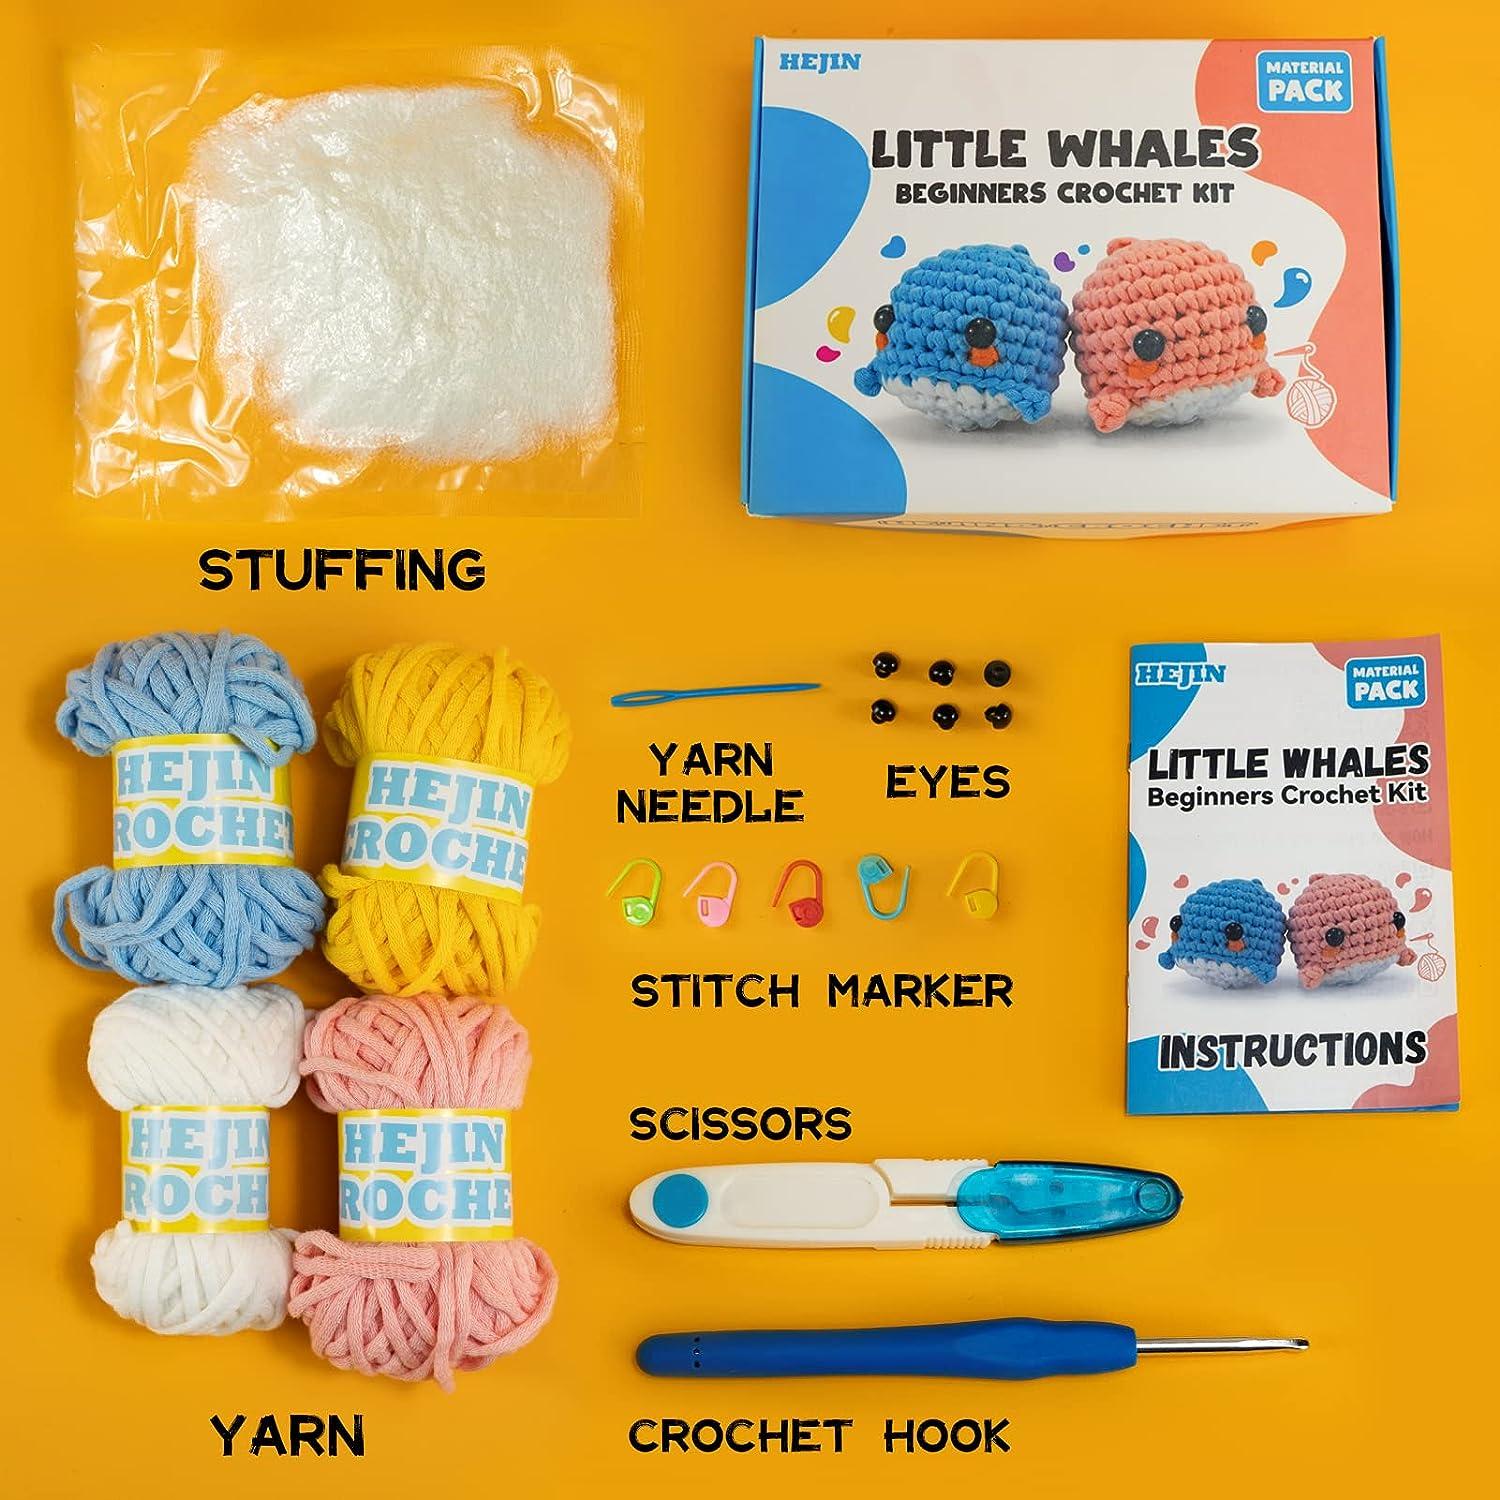 Beginner's Guide to Crochet Animal Kits: Best Crochet Kit